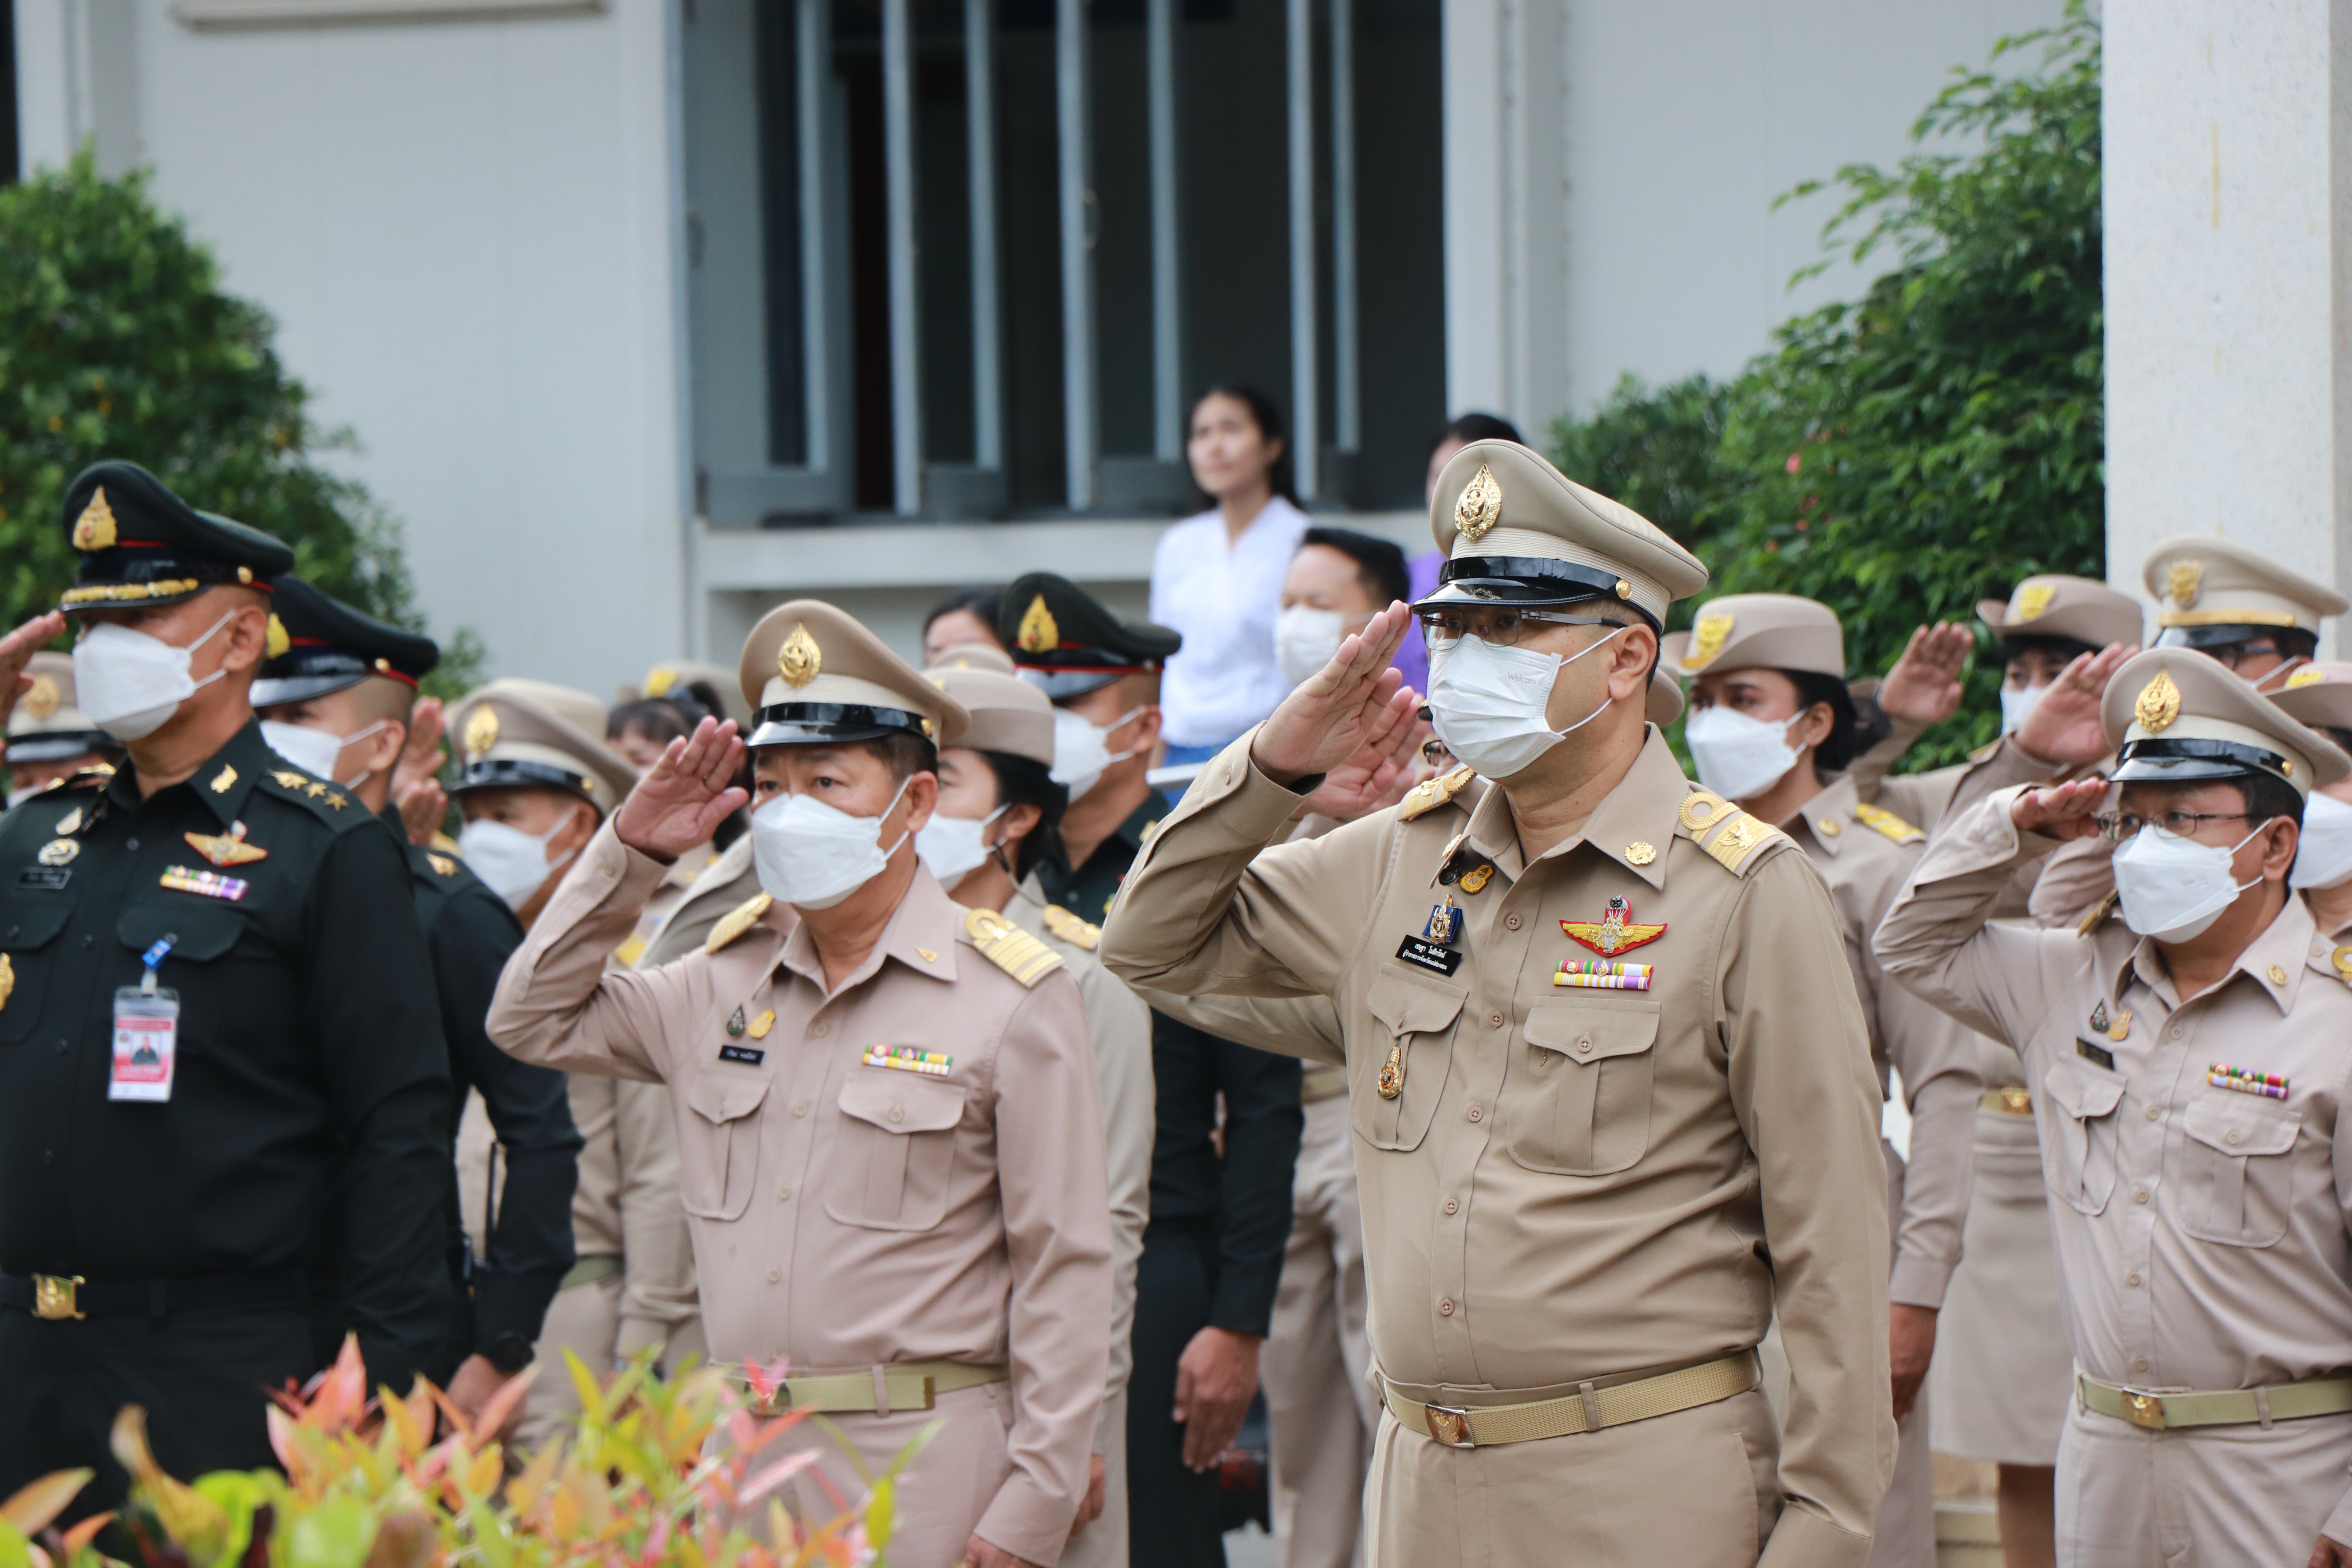 จังหวัดแม่ฮ่องสอนจัดกิจกรรมเนื่องในวันพระราชทานธงชาติไทย ประจำปี 2566